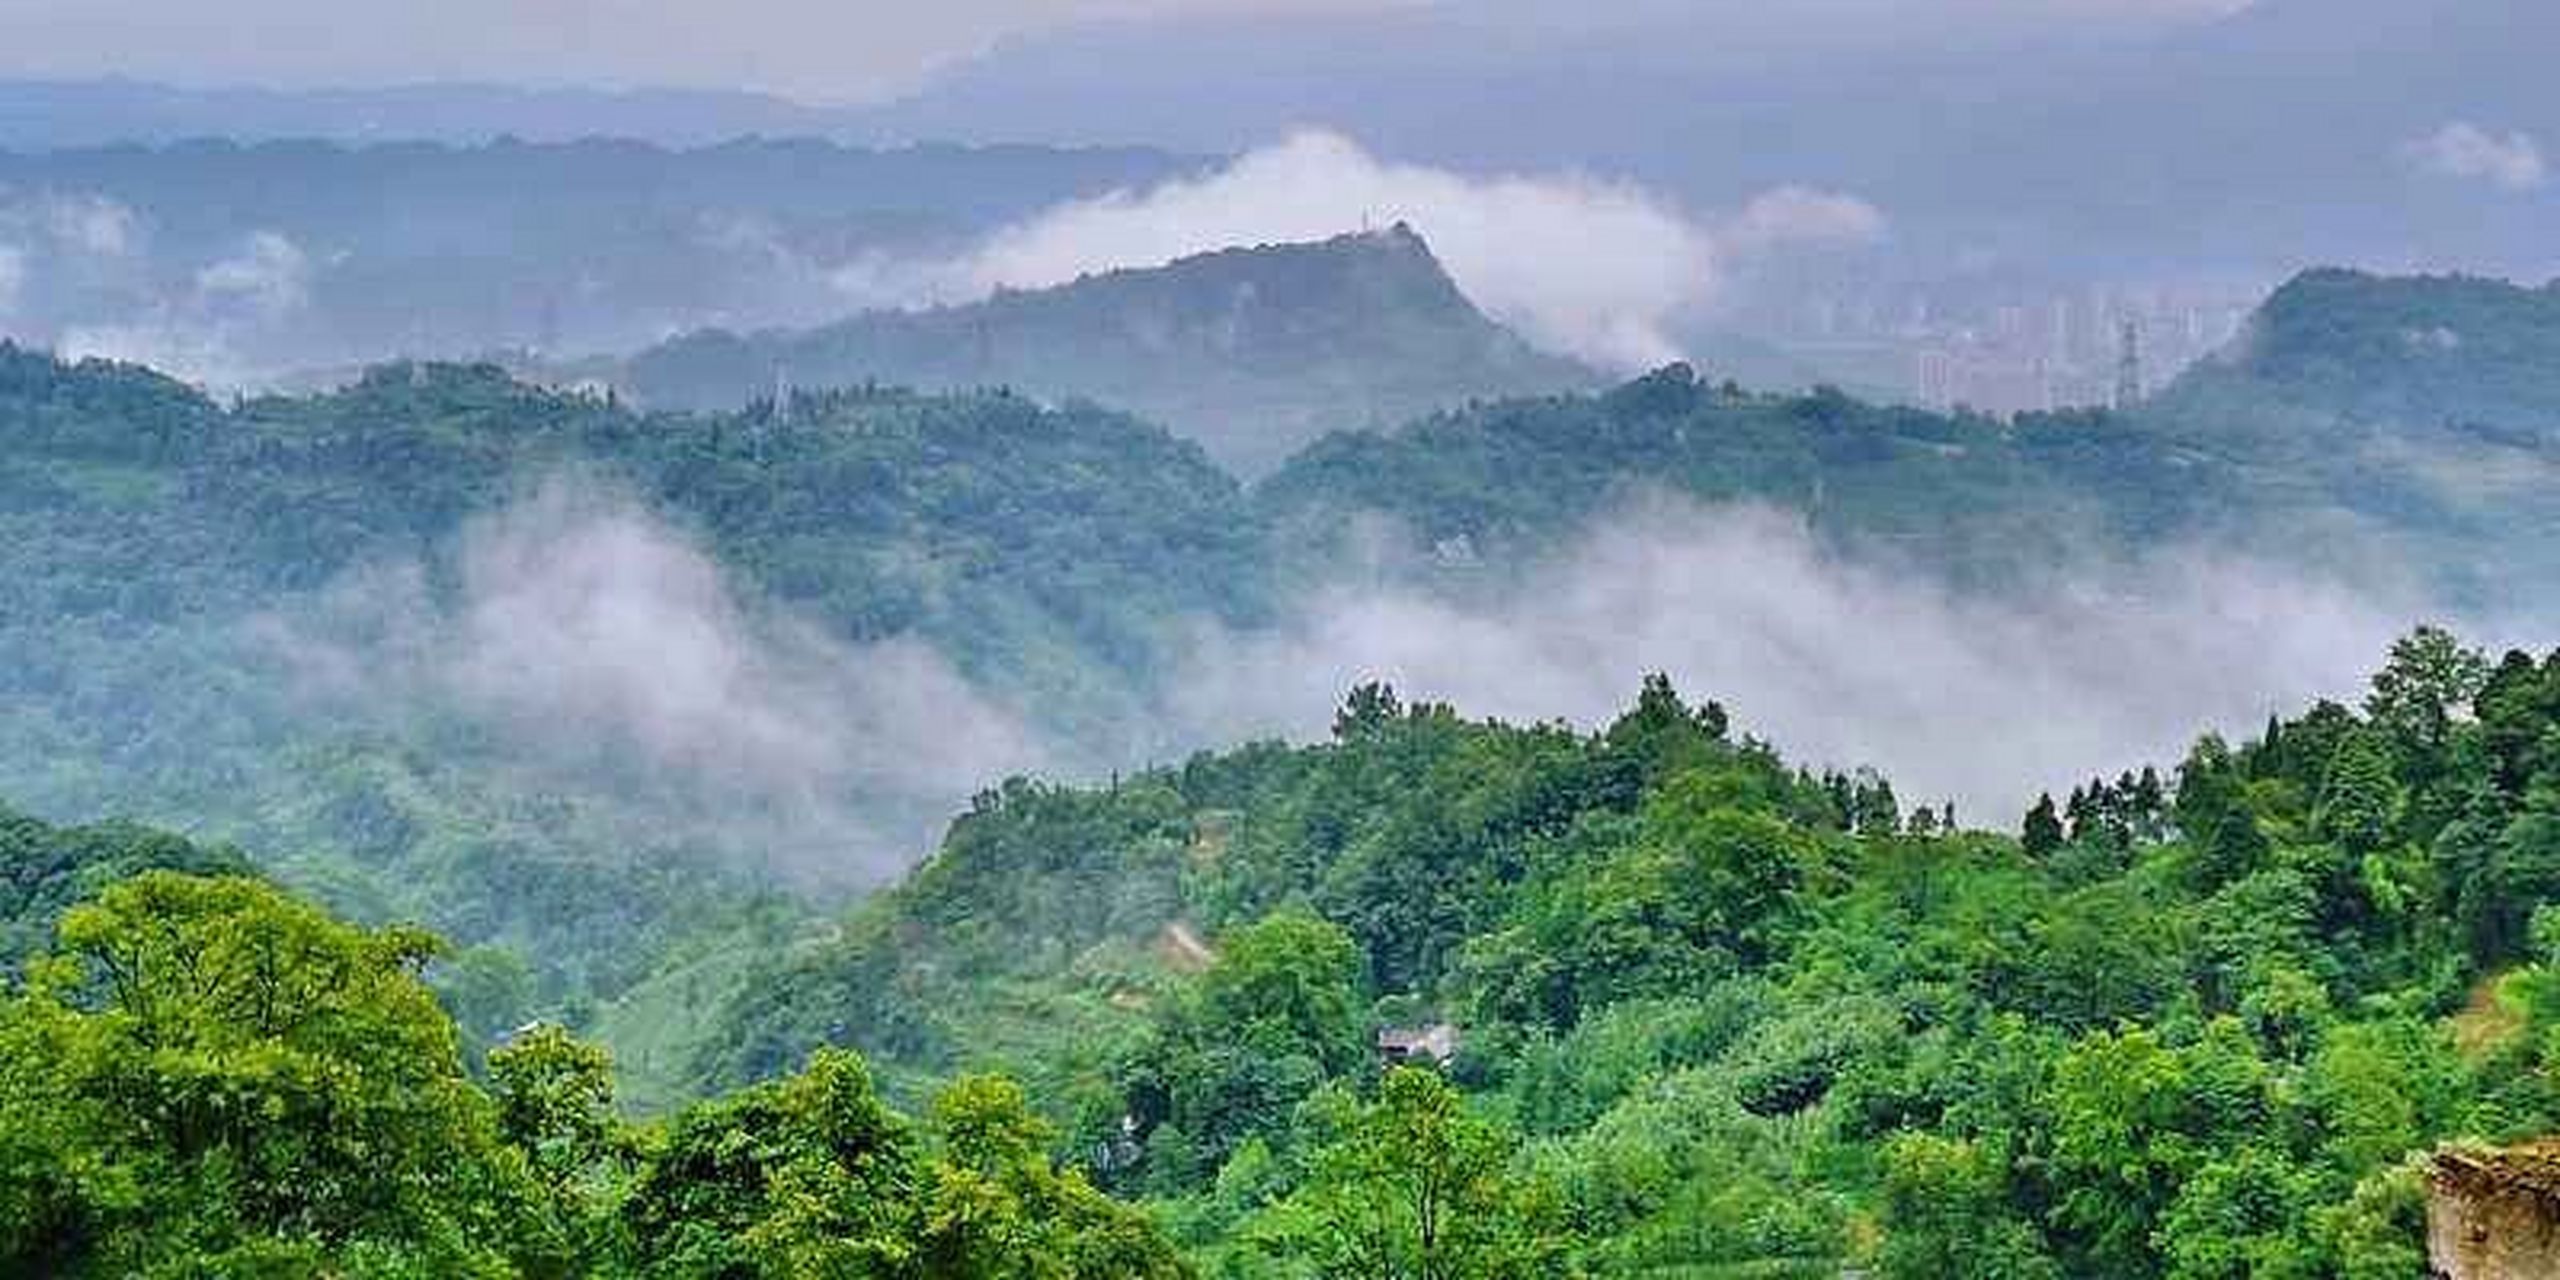 蒙顶山 蒙顶山又名蒙山,位于四川省雅安市境内,因雨雾蒙沫而得名,是